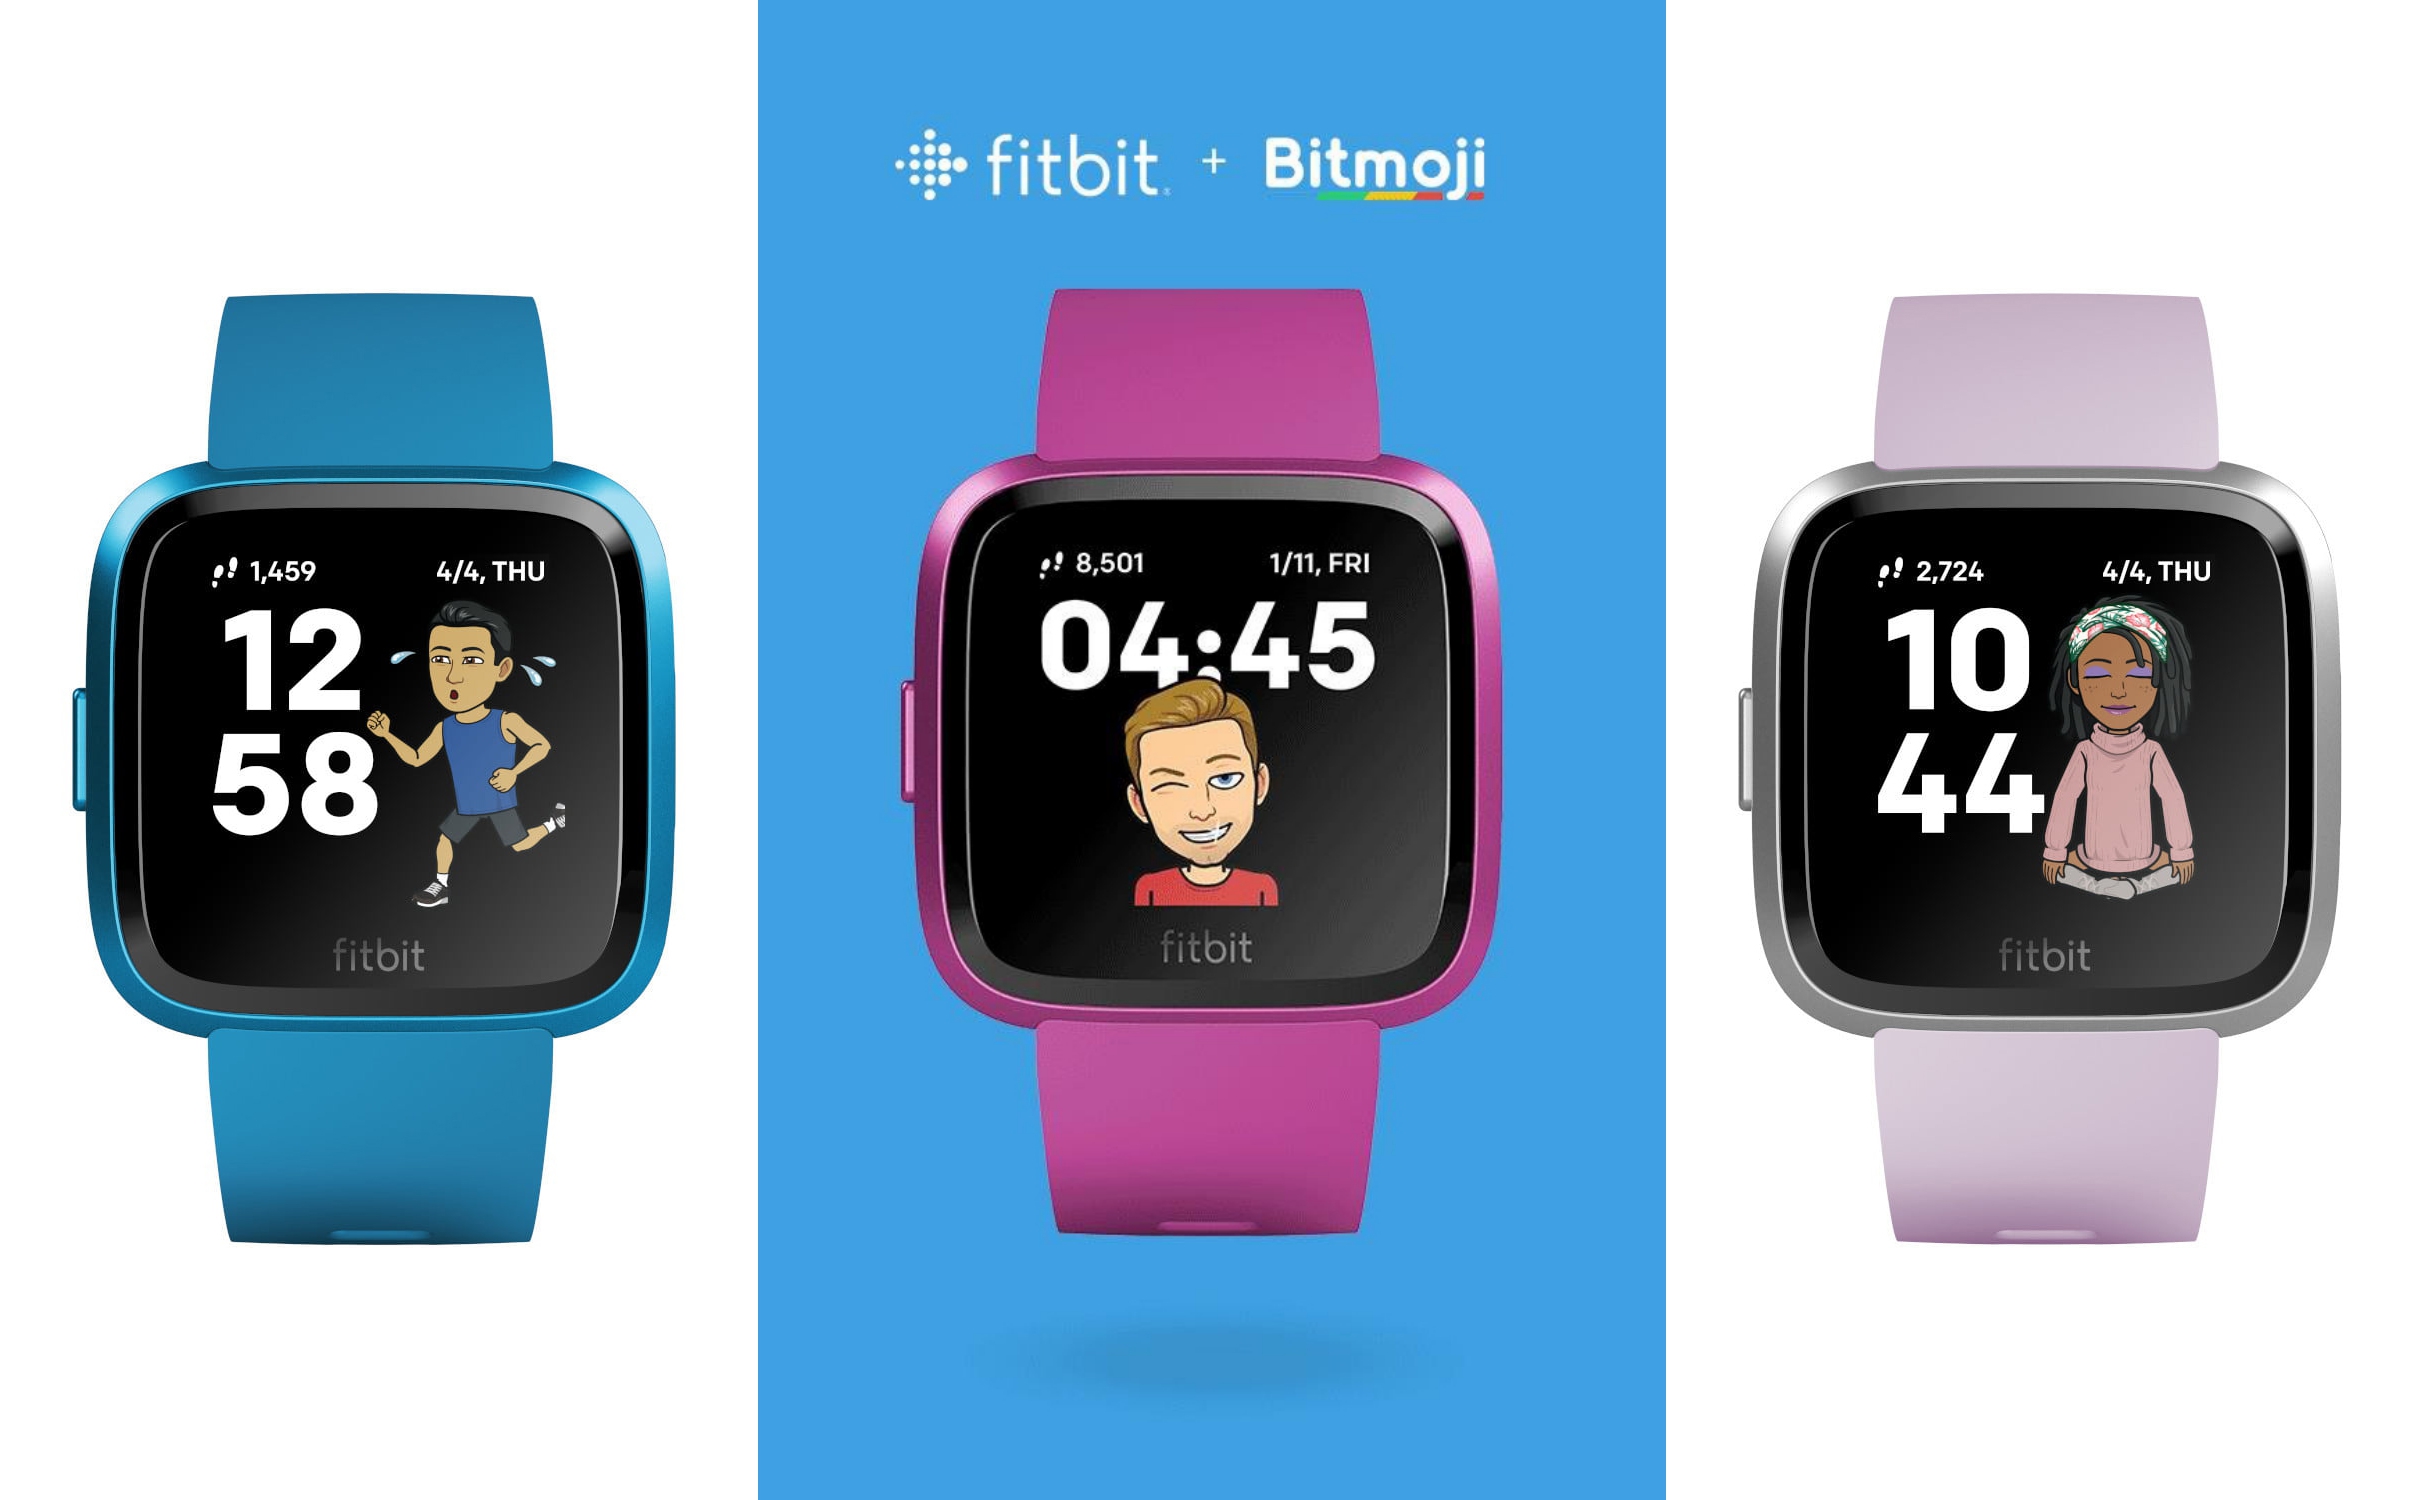 Bitmoji đặt chân lên đồng hồ thông minh Fitbit, nhân vật ảo cực vui nhộn và thú vị